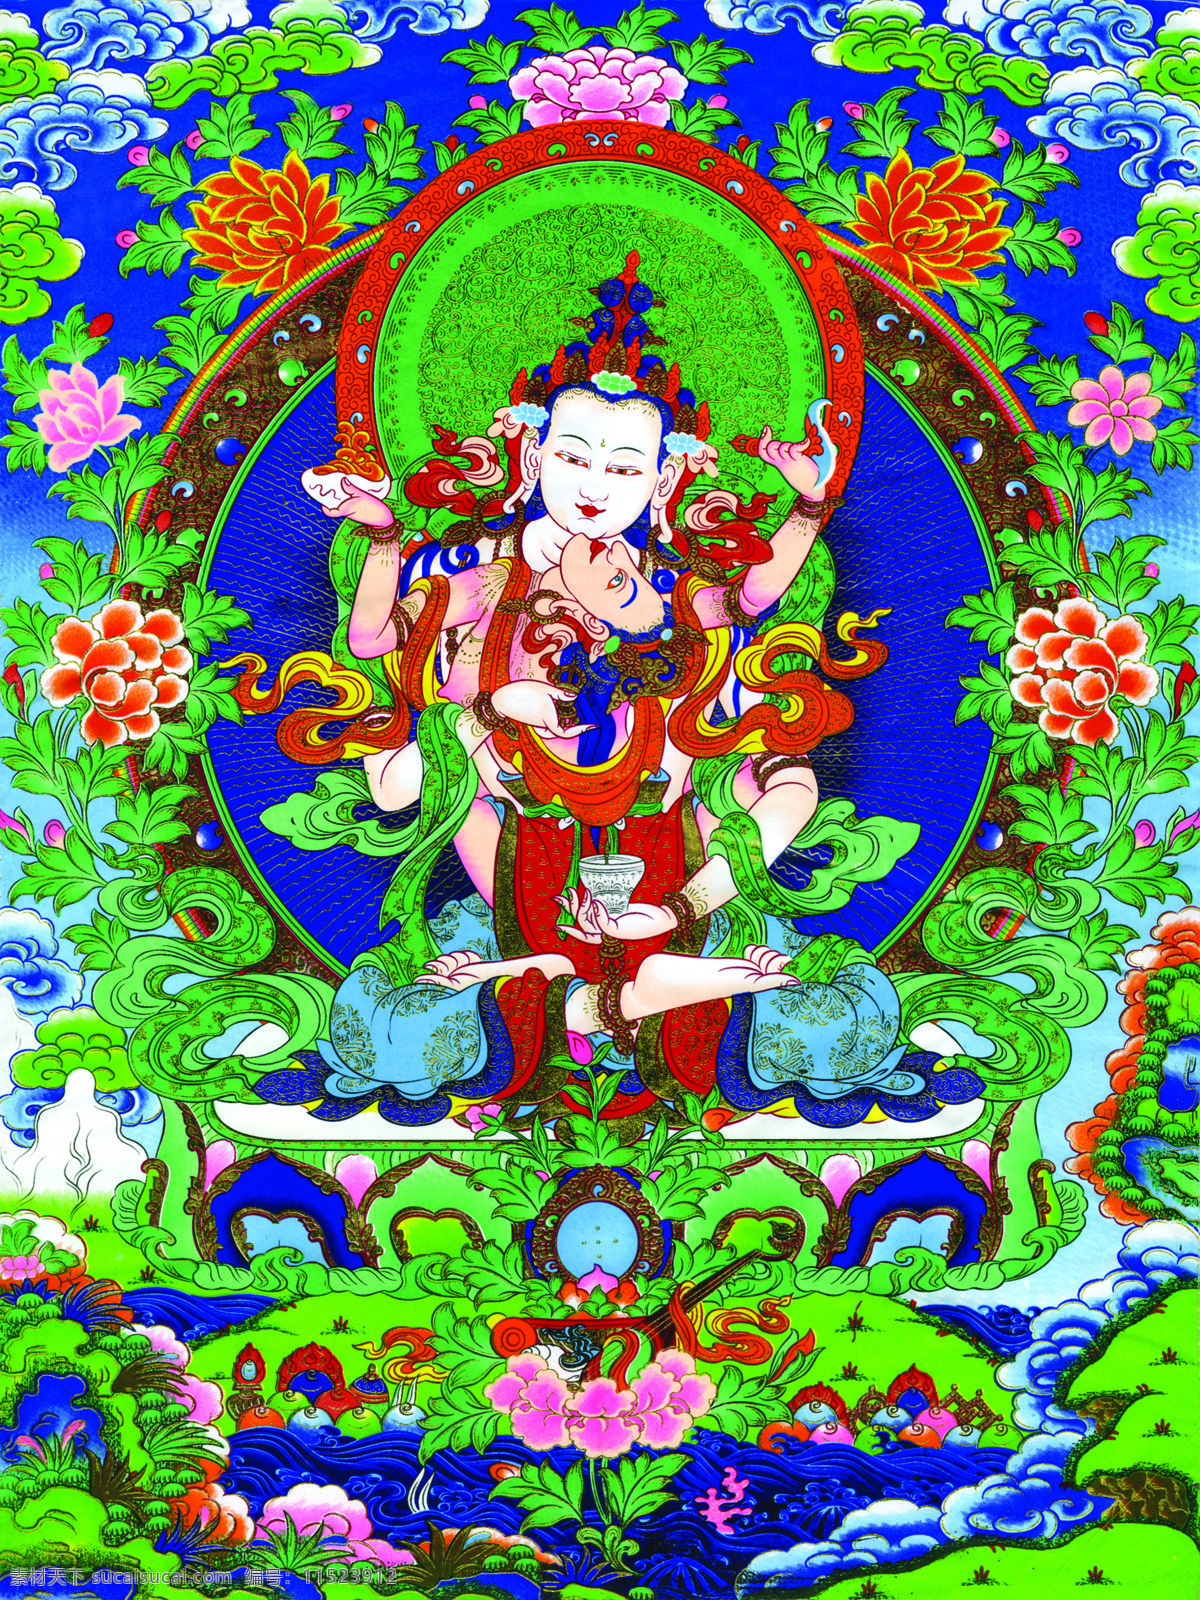 唐卡 佛教 藏传佛教 佛 宗教 宗教信仰 菩萨 西藏 民族 工艺 花纹 观音 金刚萨多 绘画 艺术 绘画书法 文化艺术